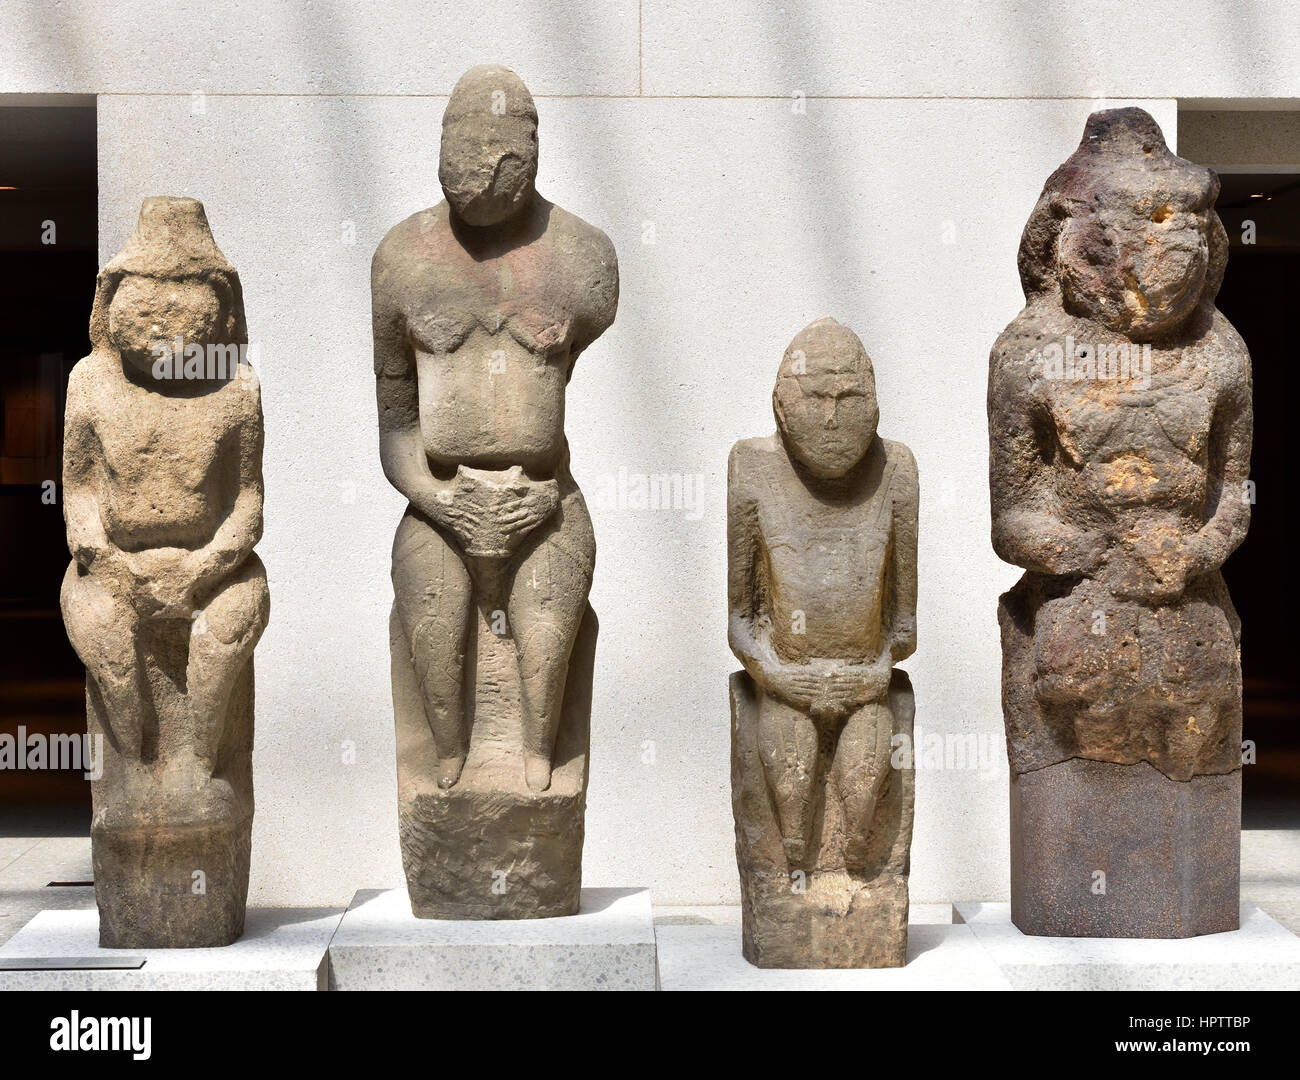 Cuman Steinfiguren von Männern und Frauen. 12. Jhd. Die Kumanen waren ein türkischer Stamm, der die südlichen russischen Steppen von 1055-1240 n. Chr. regierte. Stockfoto